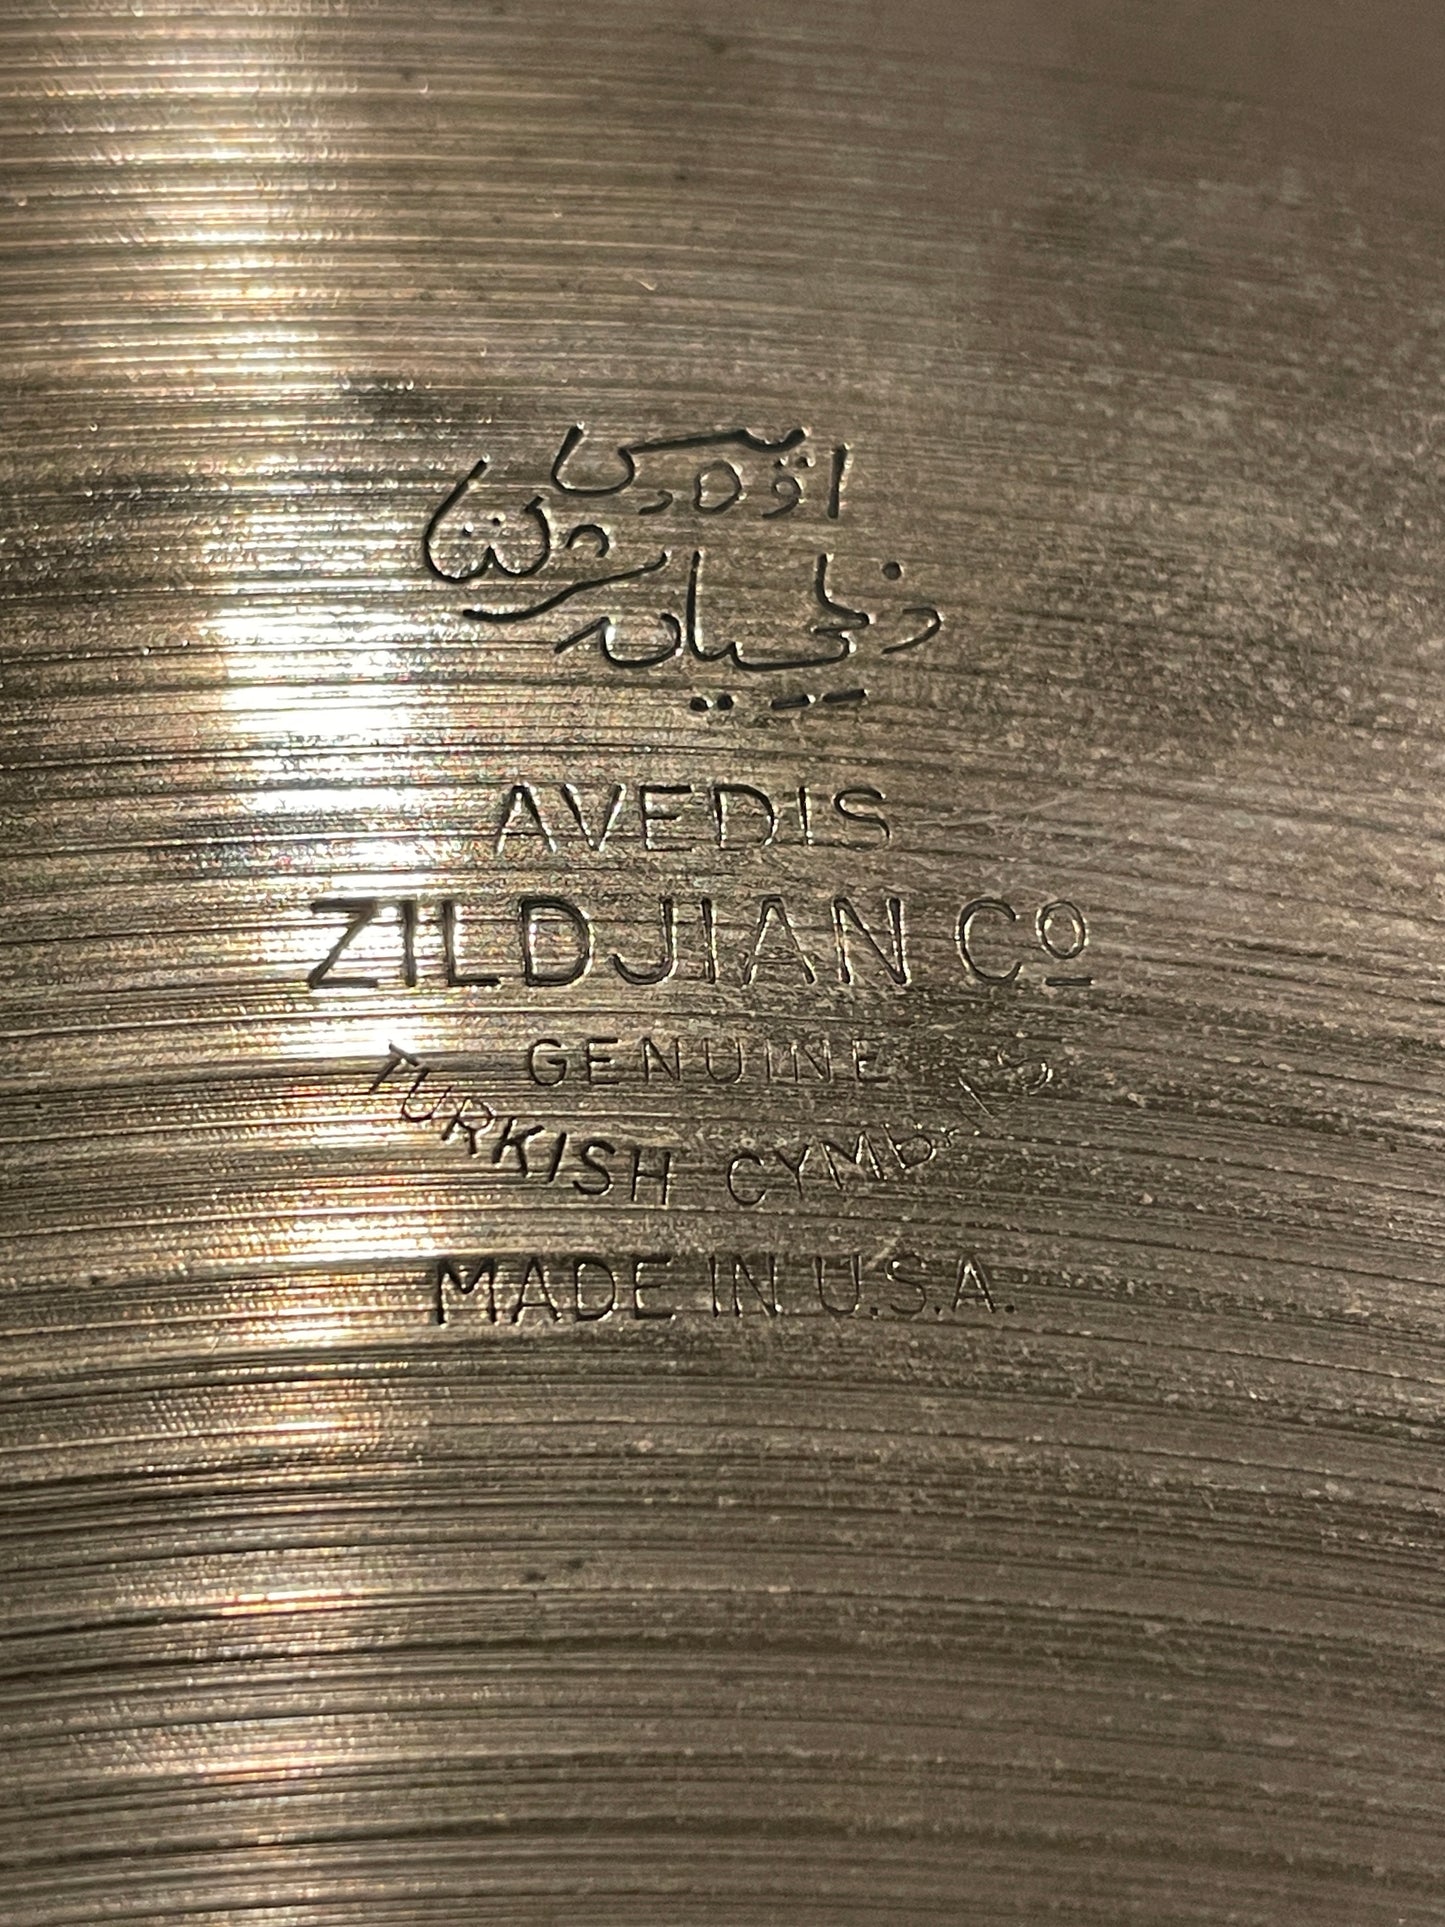 20" Zildjian A 1950s Ride Cymbal 2238g #13 *Video Demo*